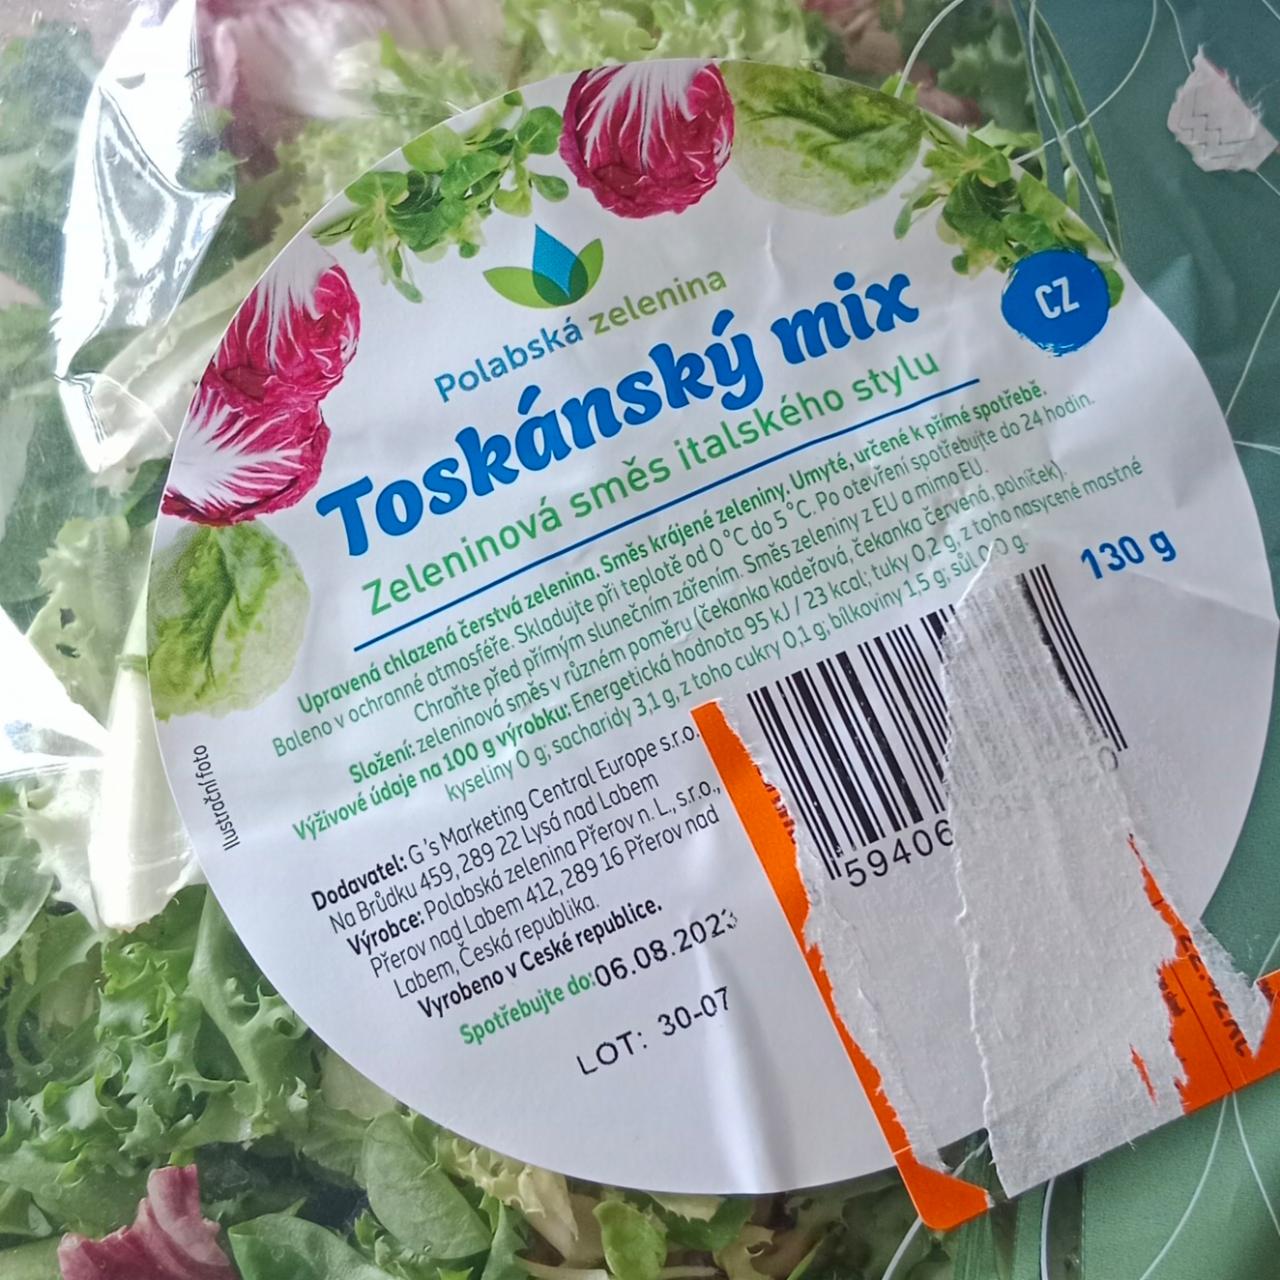 Fotografie - Toskánský mix Polabská zelenina